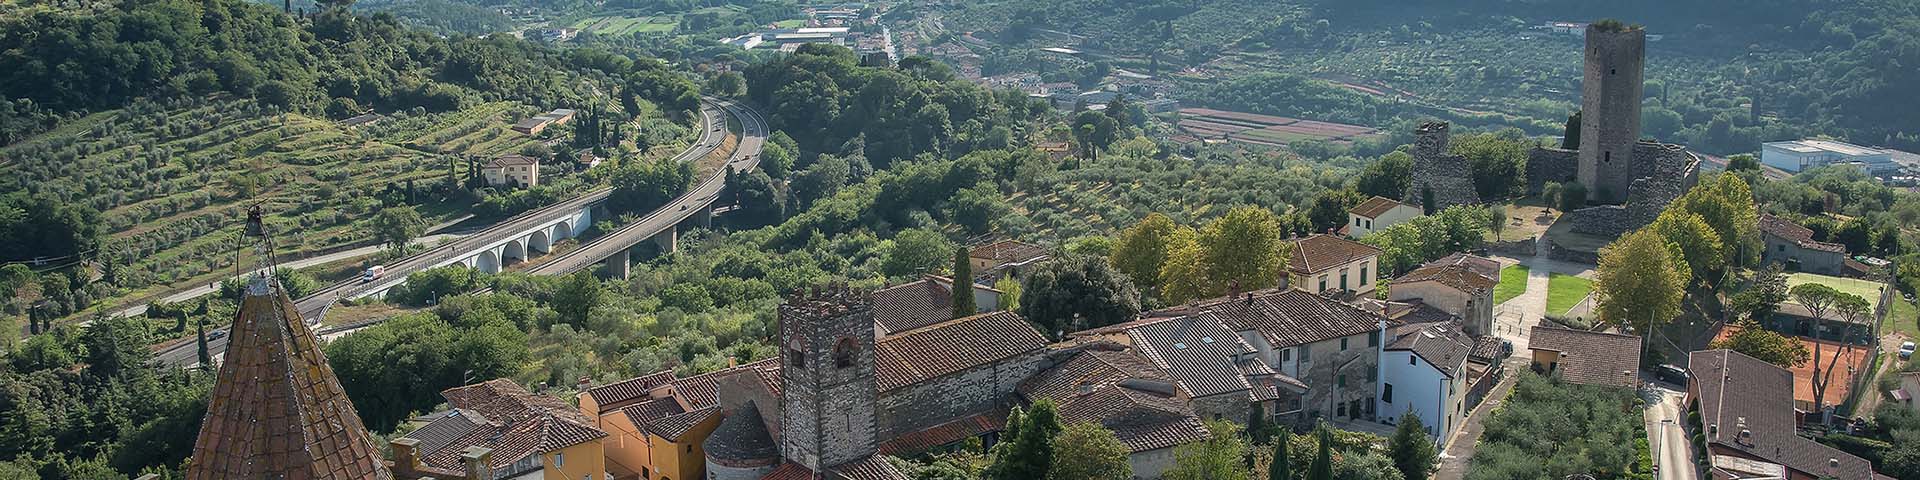 Rocca nuova, Serravalle Pistoiese